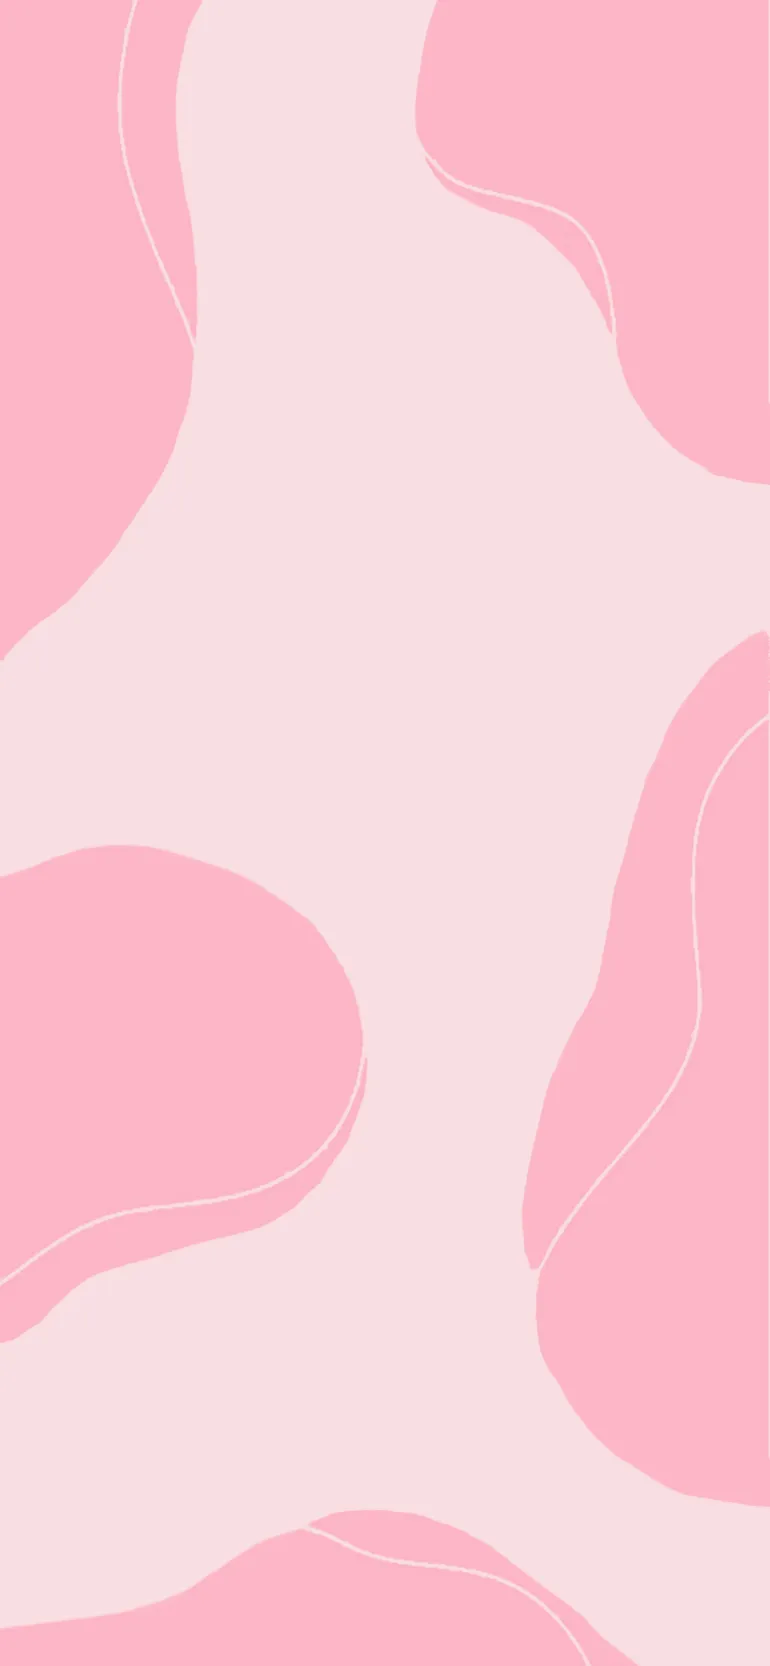 Hình nền màu hồng rực rỡ sẽ làm bạn say mê với vẻ đẹp nữ tính và dịu dàng. Hãy cùng chiêm ngưỡng bức tranh nền hồng ngọt ngào và đầy cảm hứng.